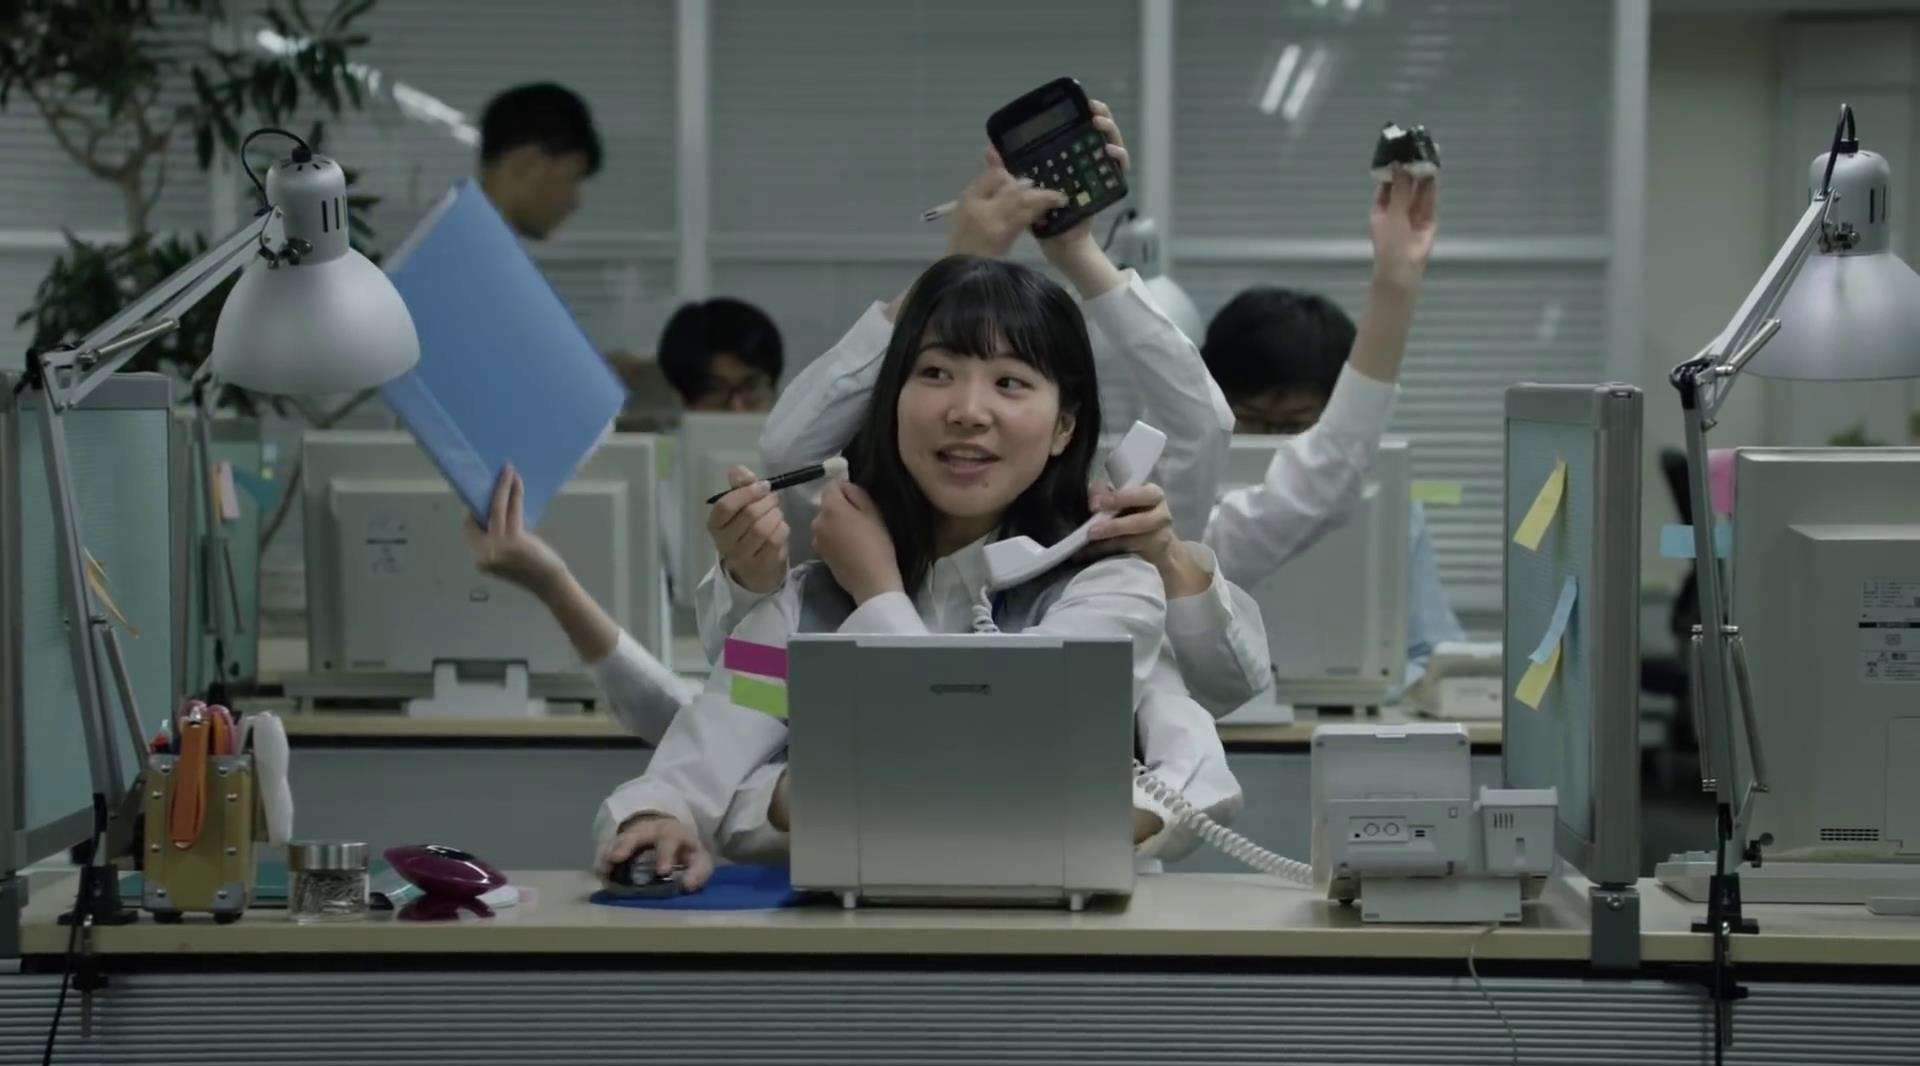 15支日本爆笑超速广告《只需6秒》